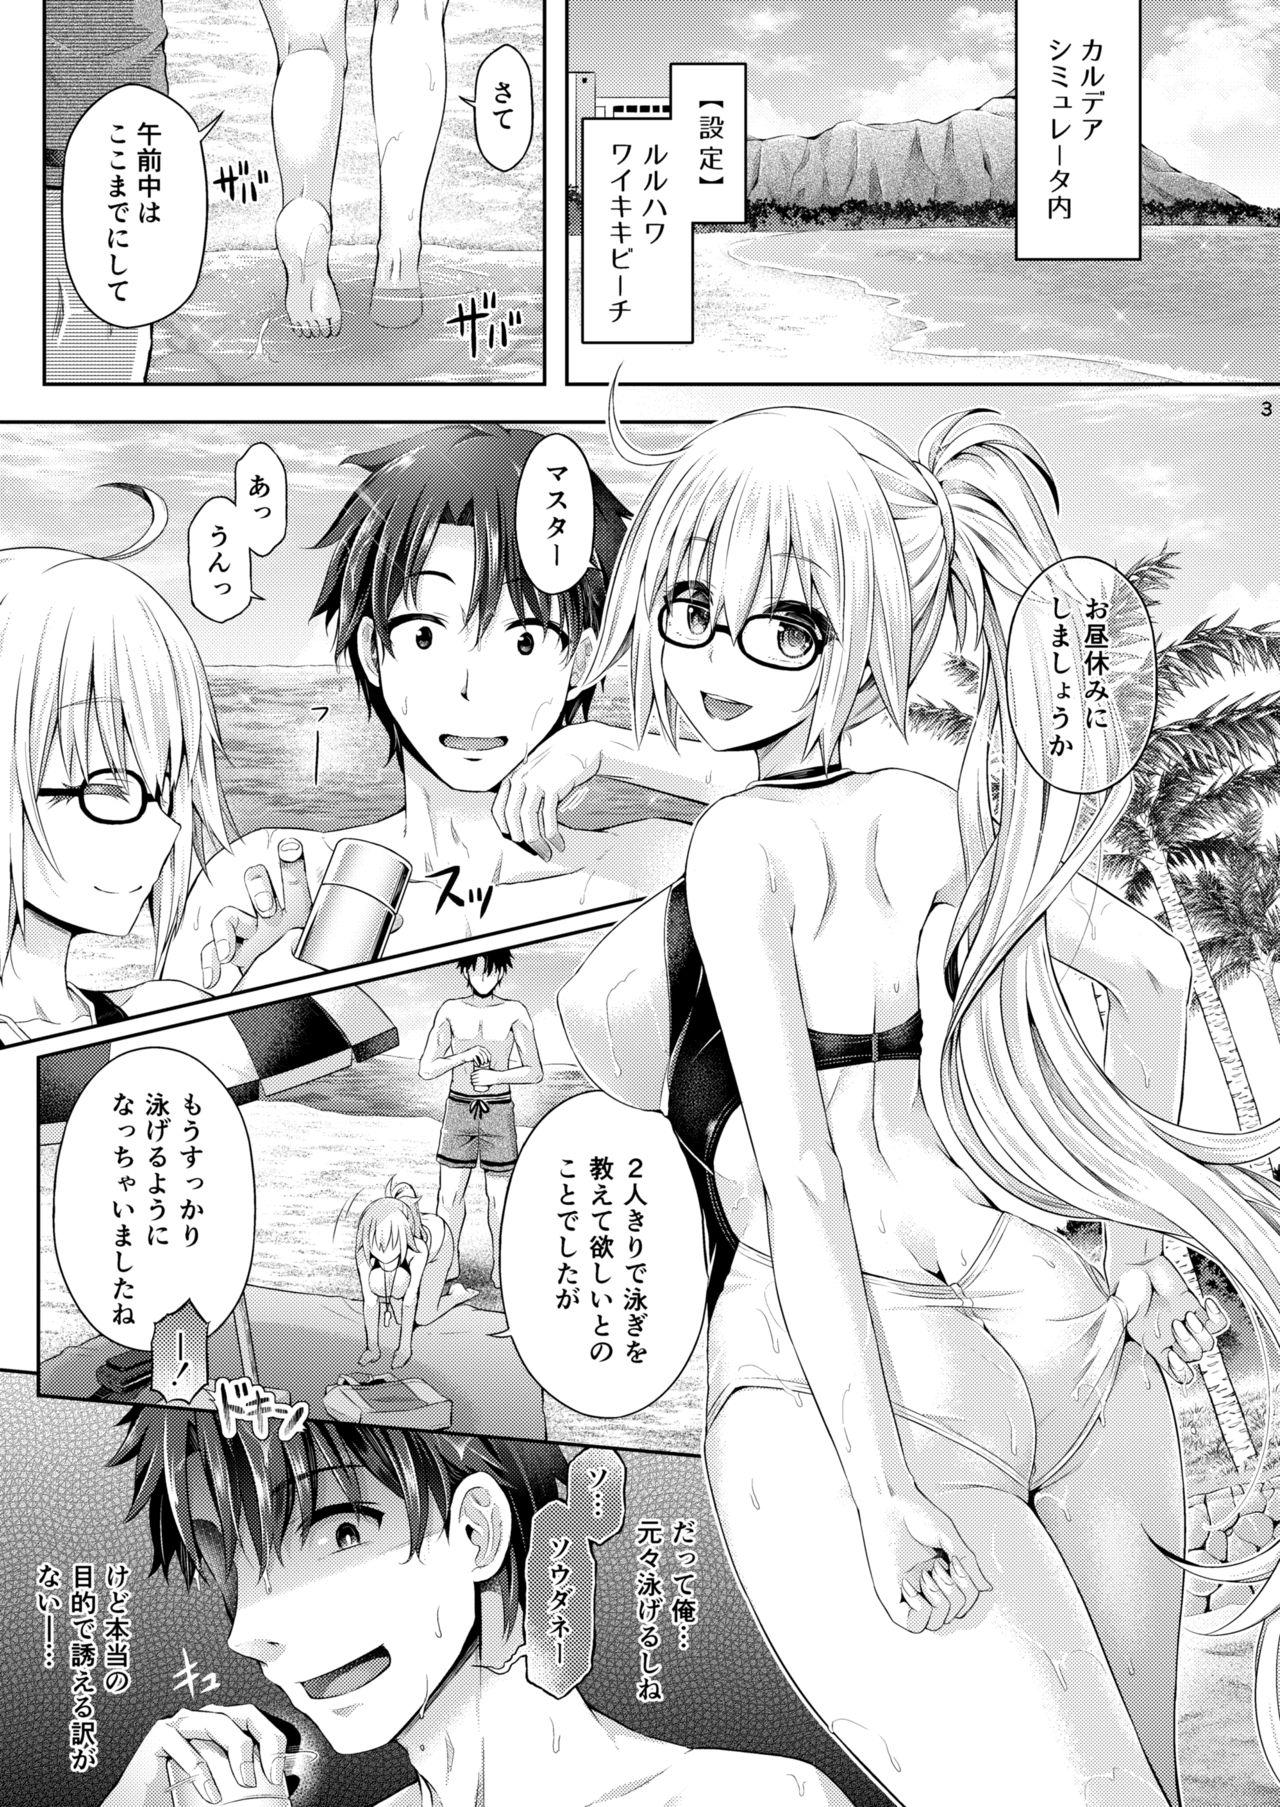 Caseiro [Taniguchi-san] Kimi -Jeanne- ni Naru 2.0 (Fate/Grand Order) - Fate grand order Hotfuck - Page 4